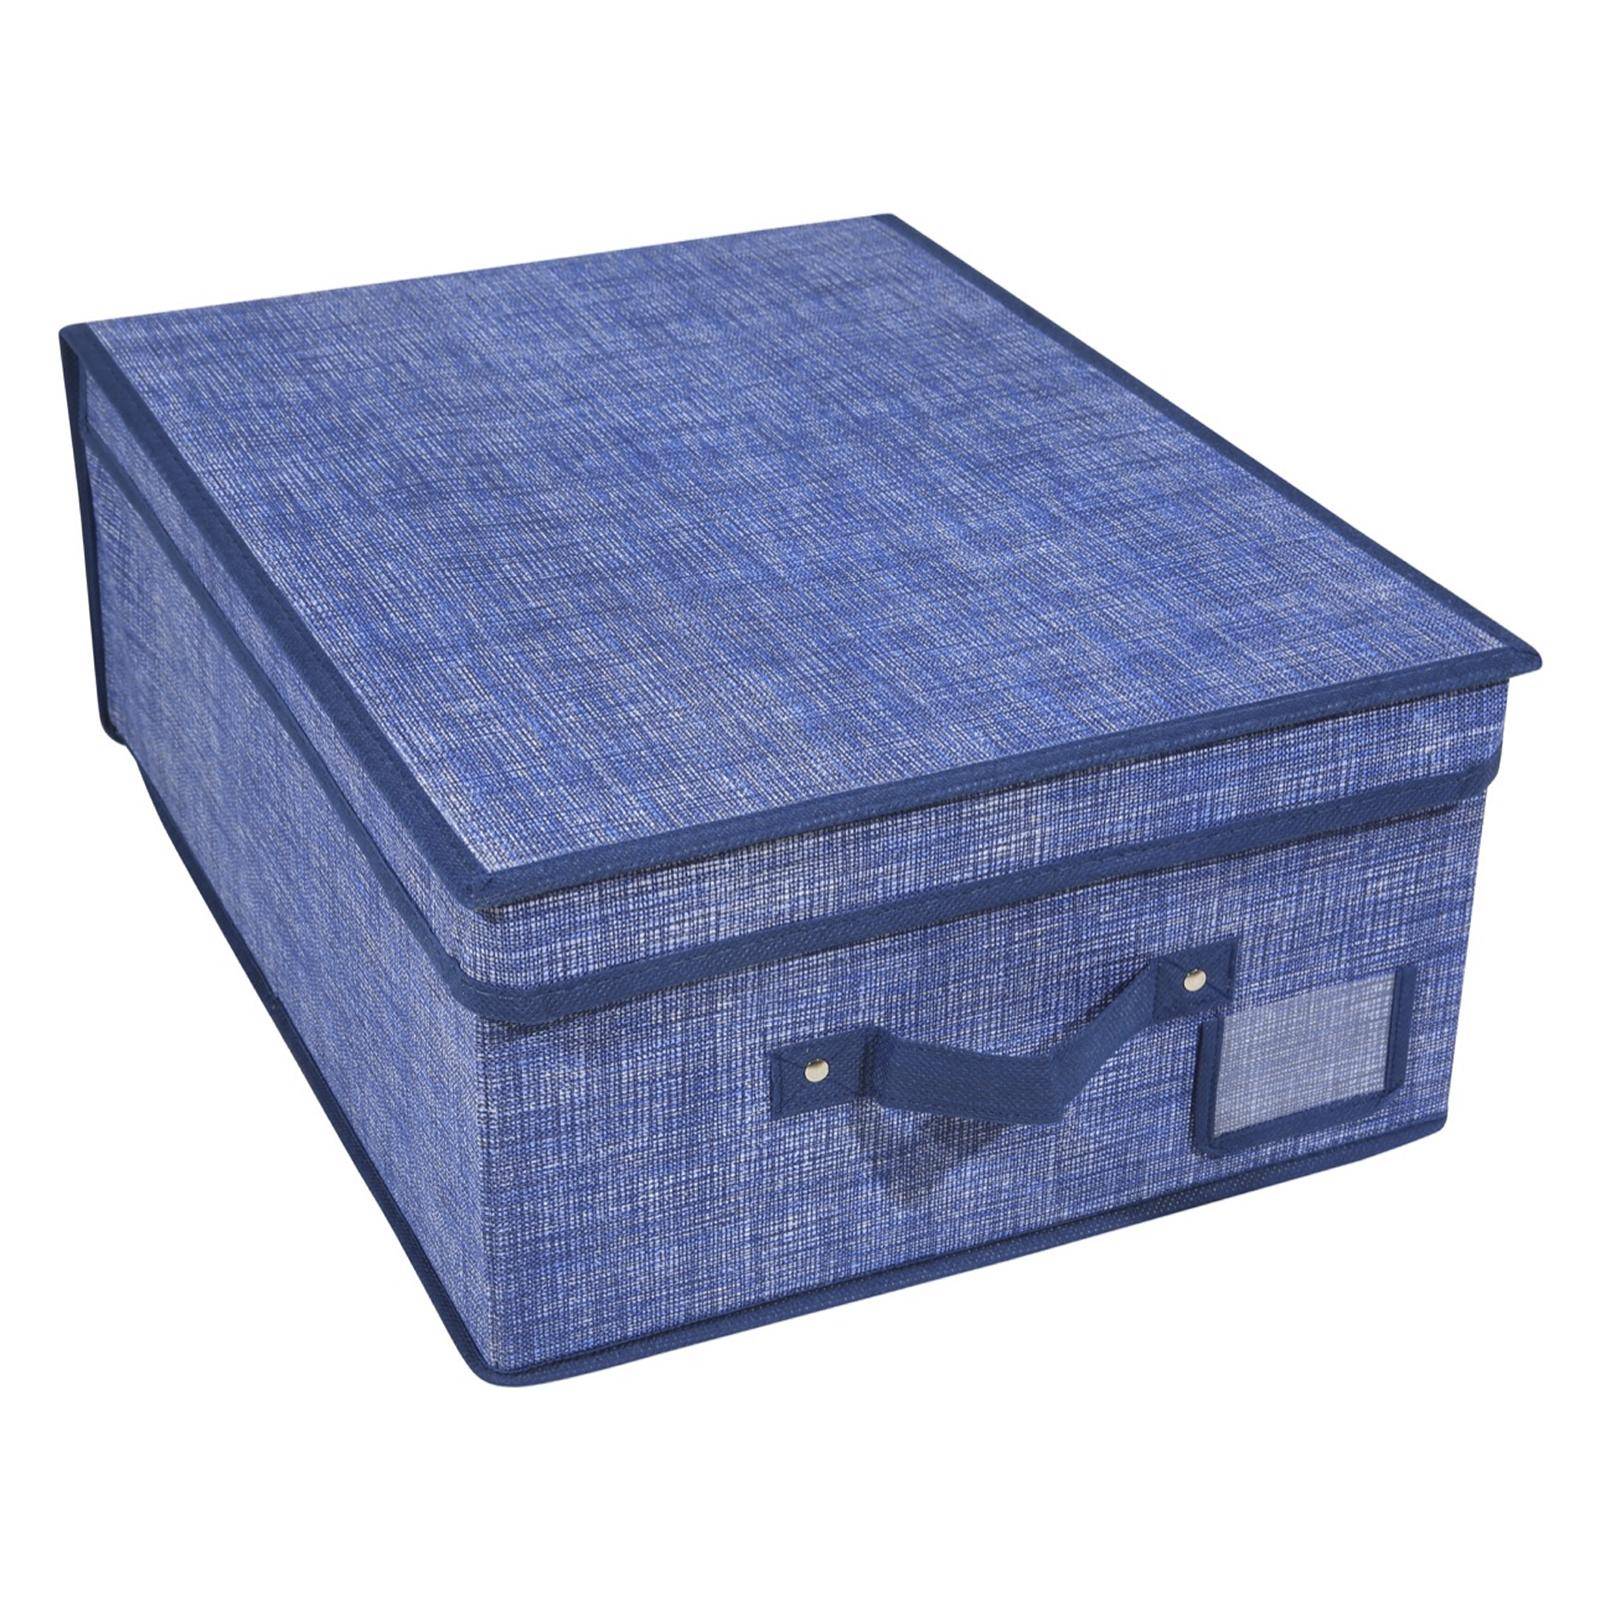 Scatola contenitore con coperchio tessuto blu per accessori o indumenti  50x40x15h cm